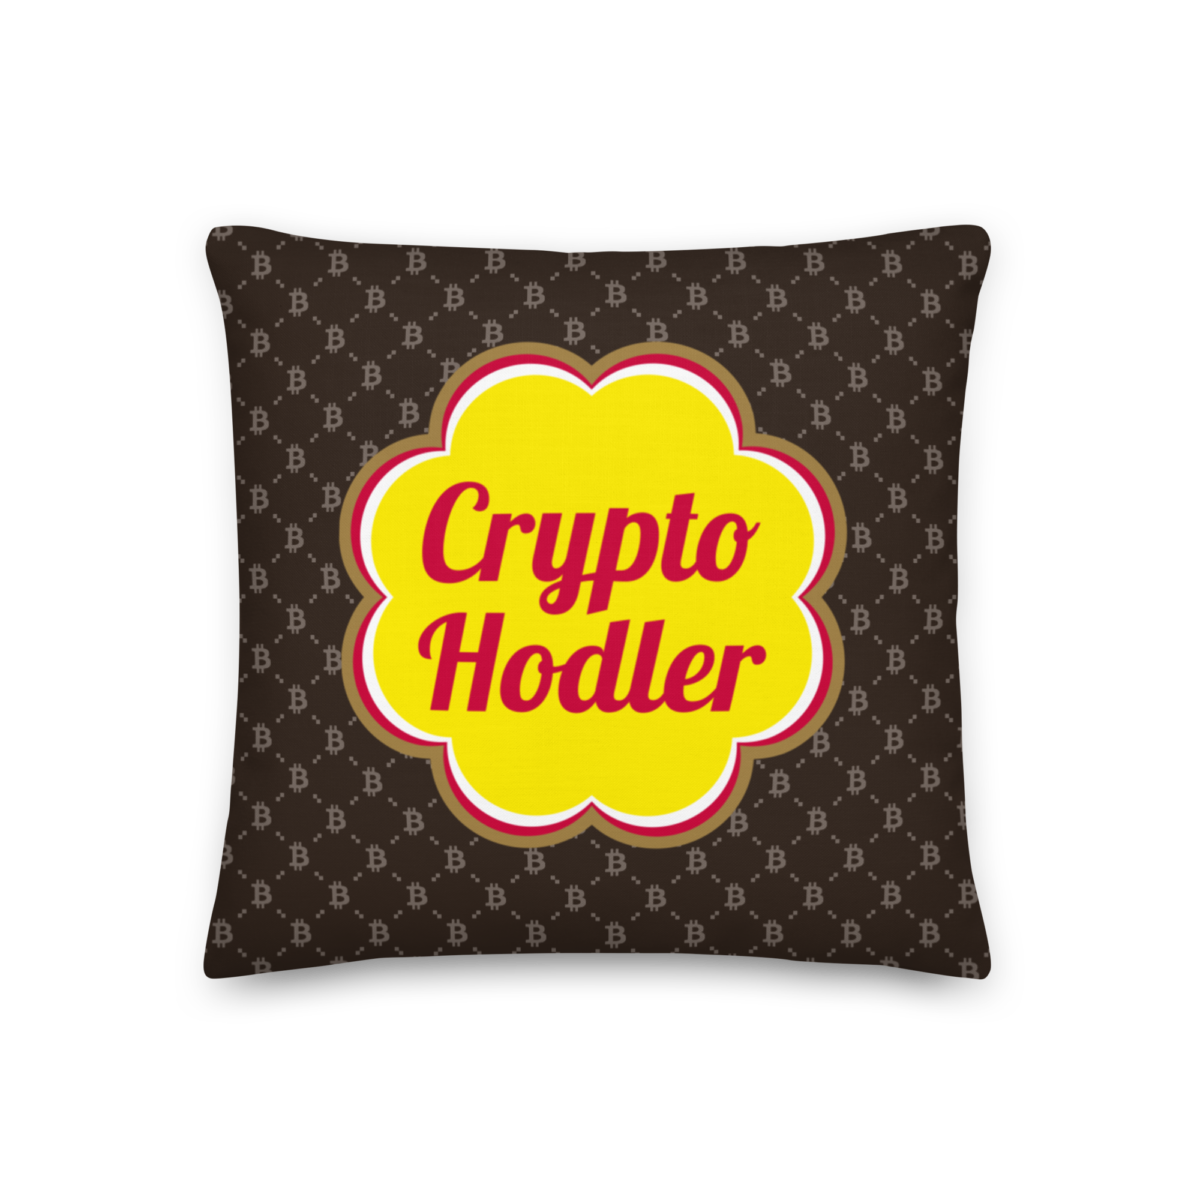 all over print premium pillow 18x18 front 633efe95c42fe - Crypto Hodler Fashion Premium Pillow